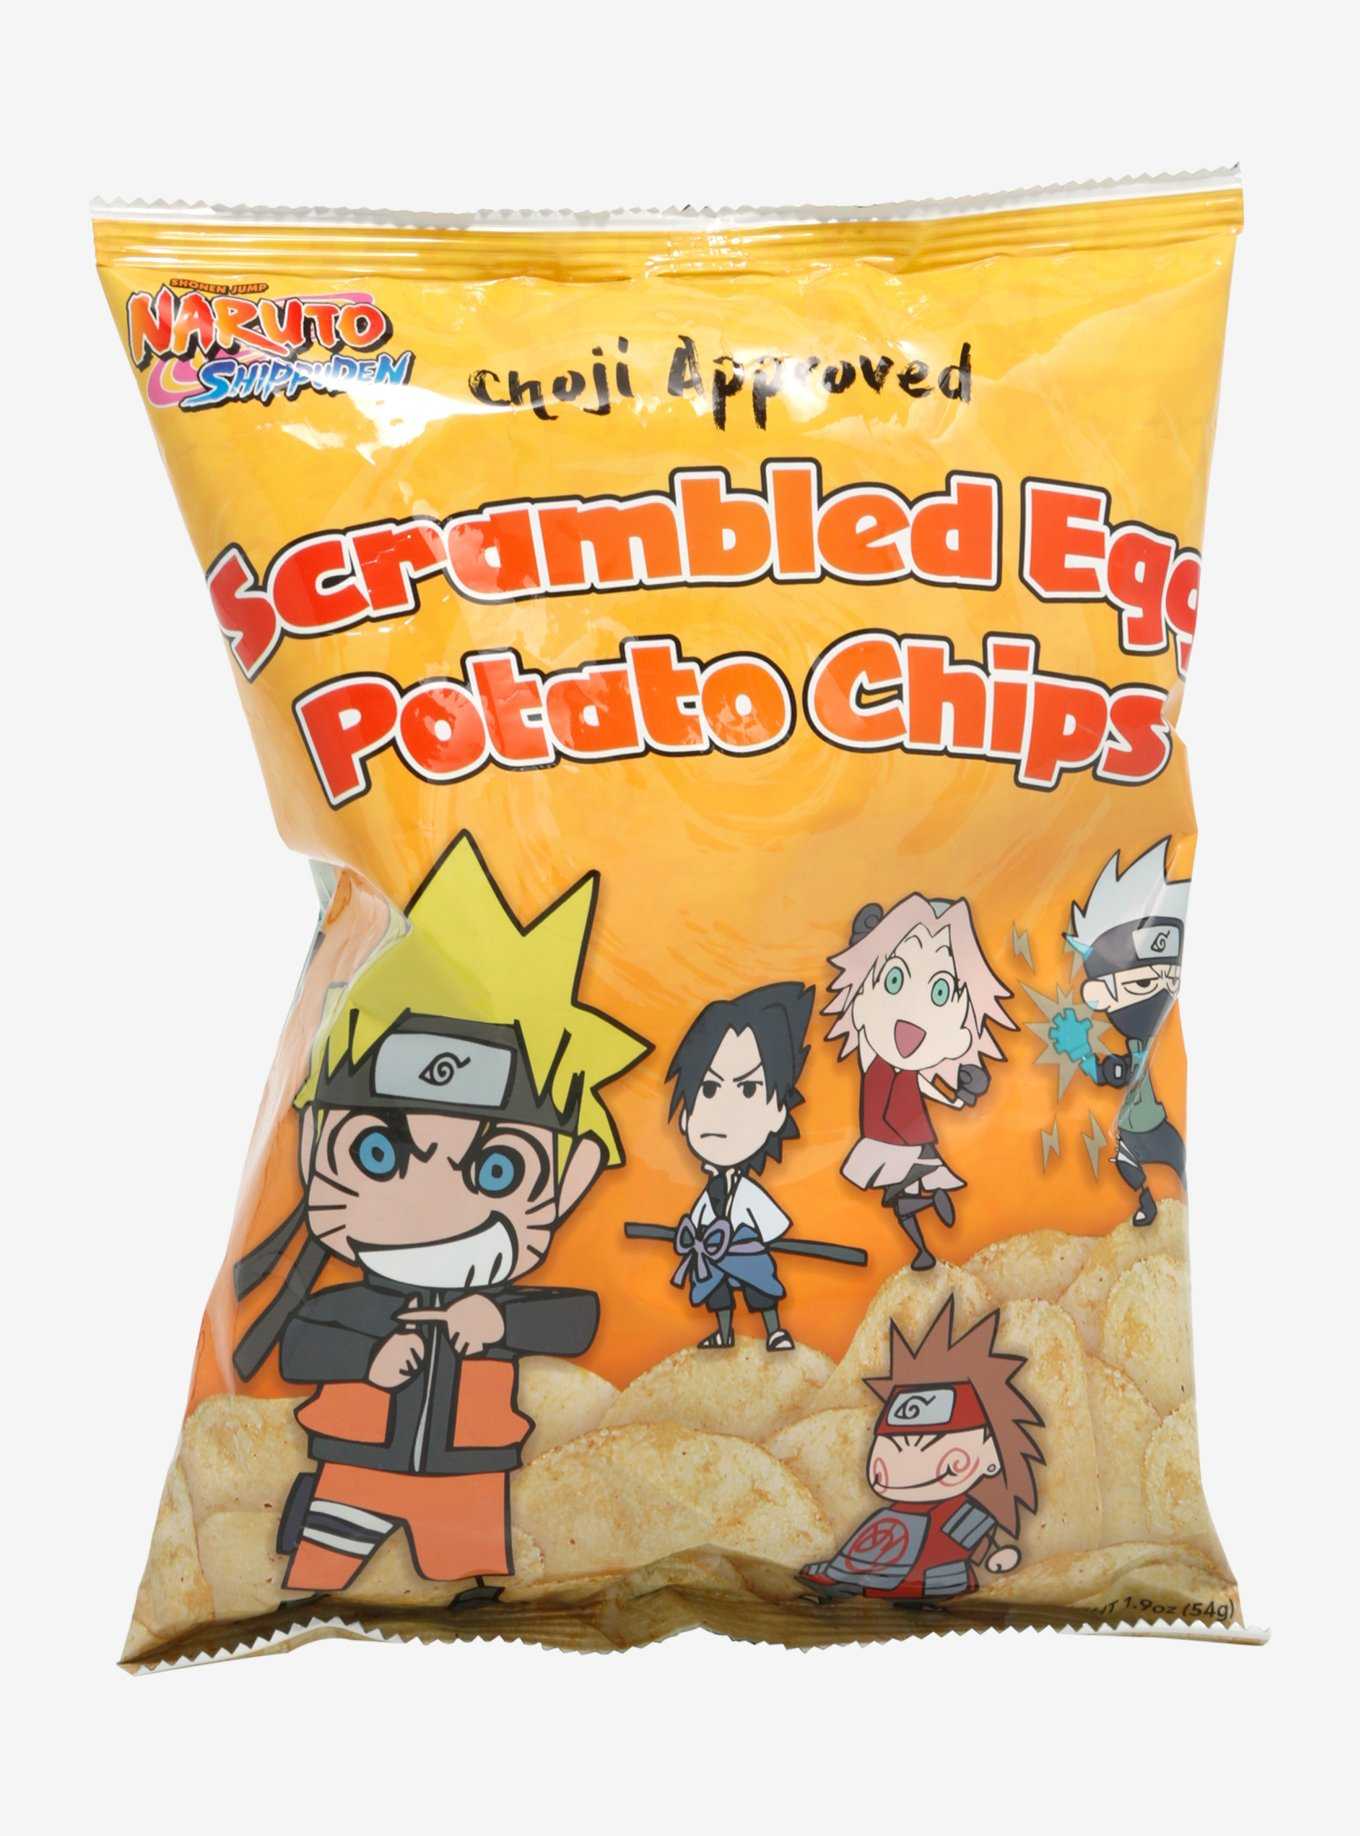 Naruto Shippuden Scrambled Eggs Potato Chips, , hi-res